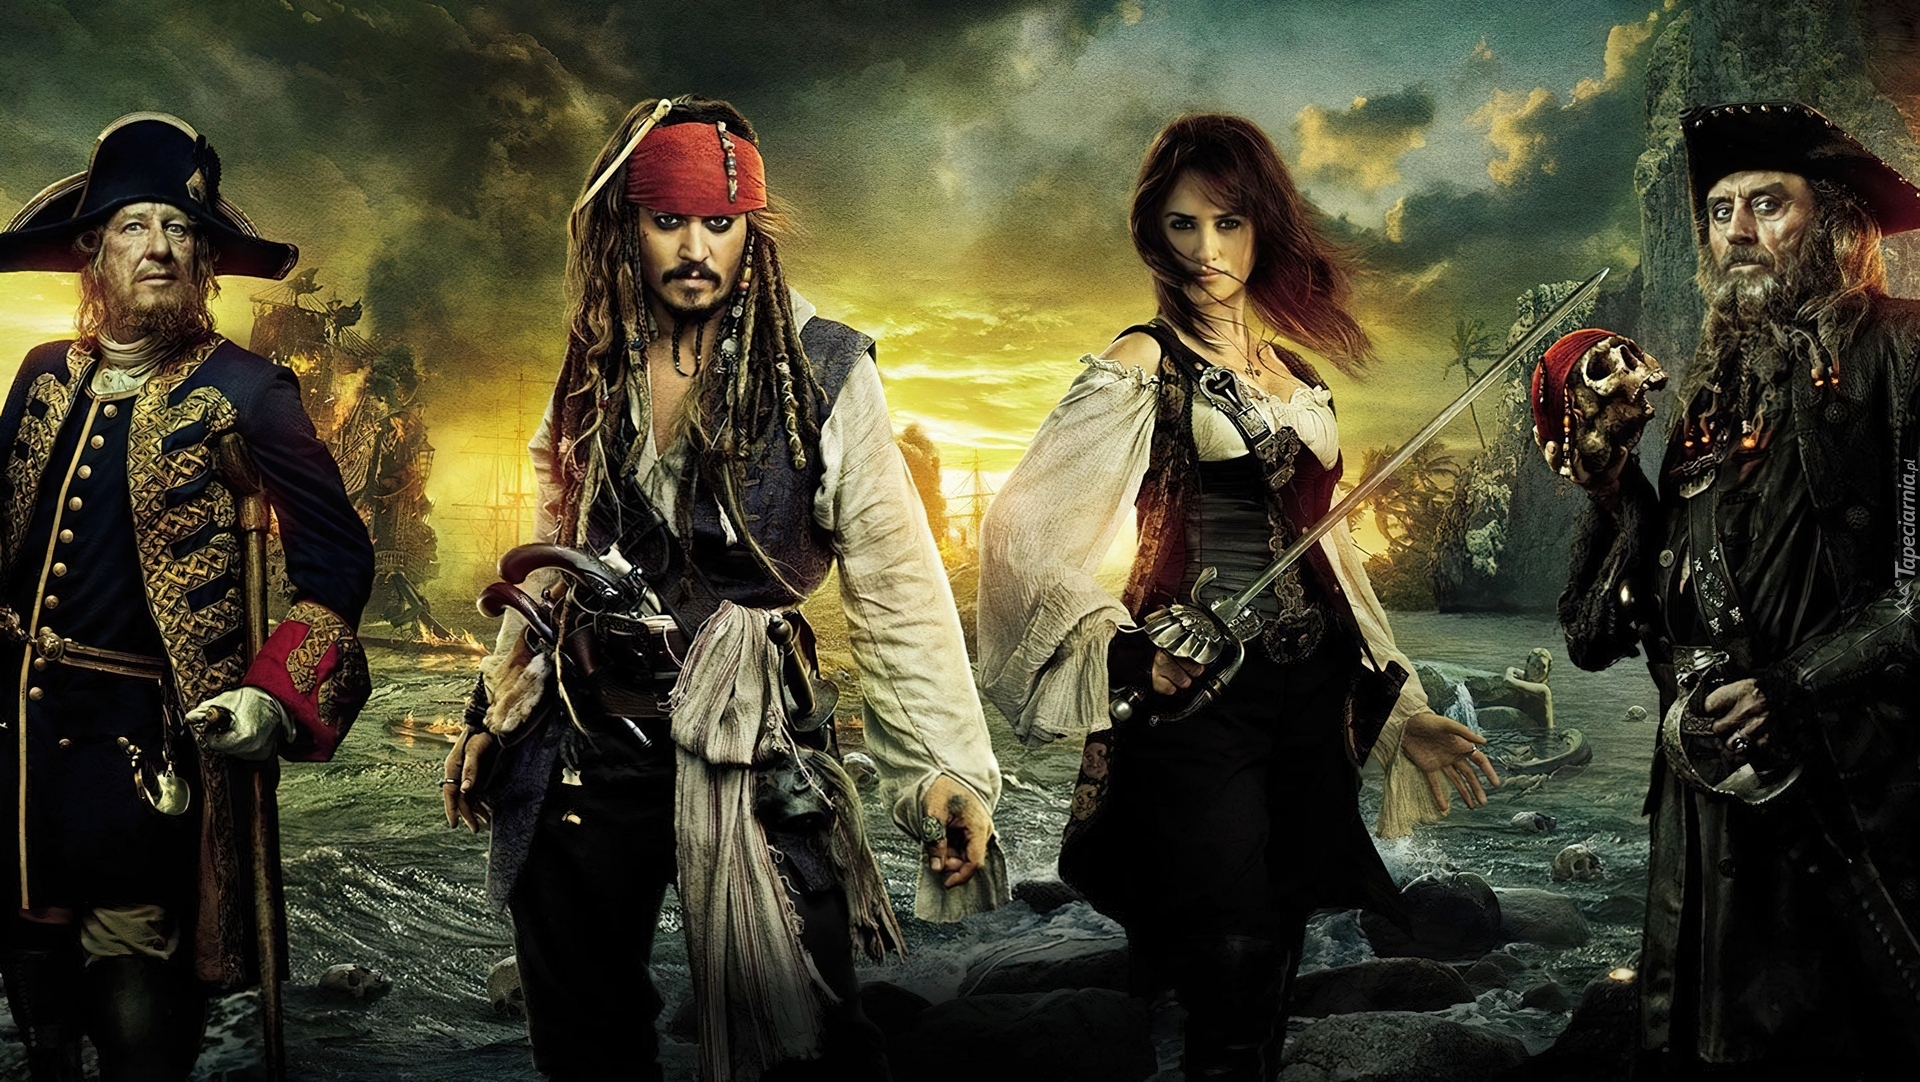 Bohaterowie, Piraci Z Karaibów